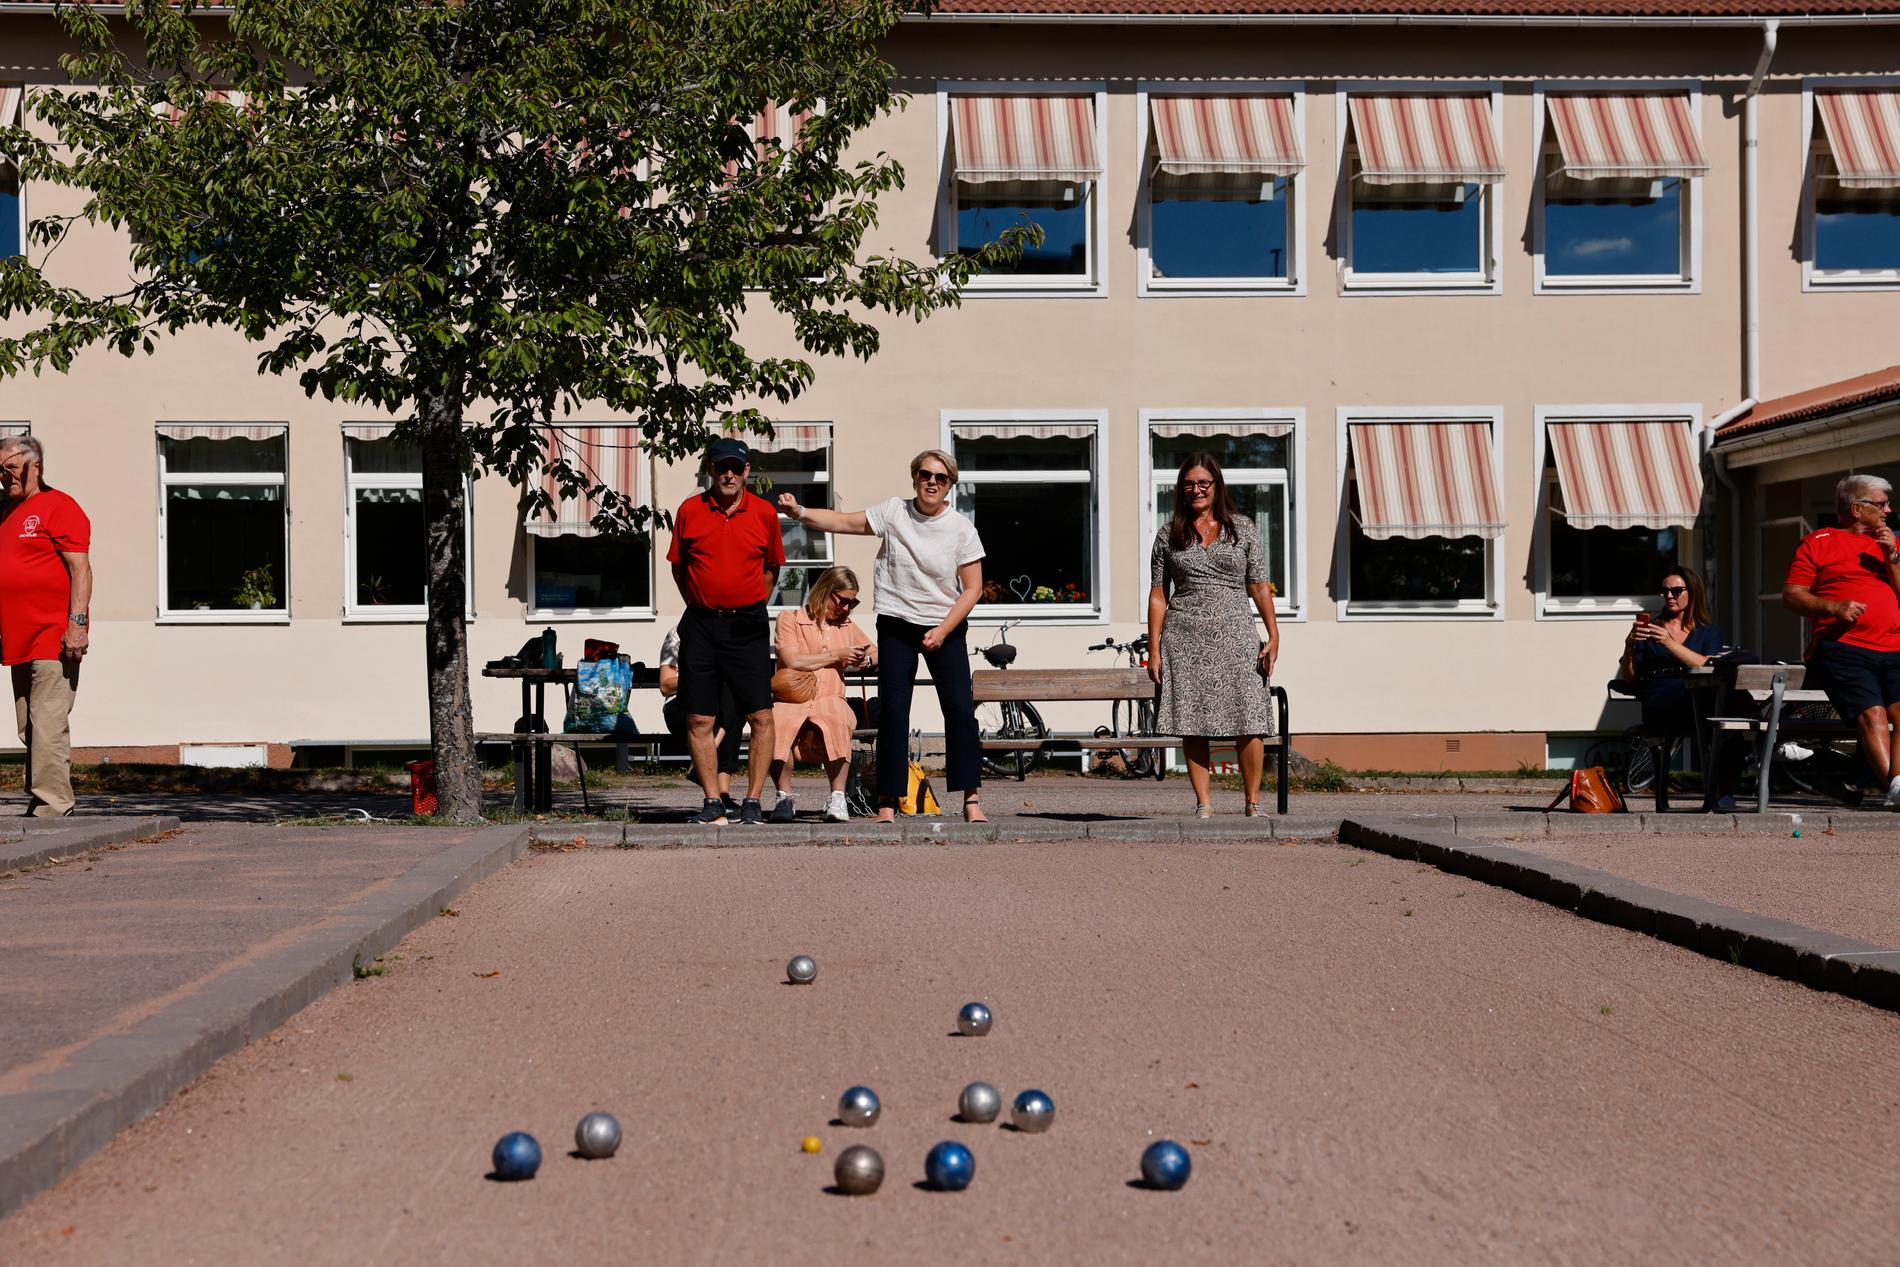 Lena Hallengren spelar boule bakom en nedlagd skola i en gammal bruksort i Västmanland.